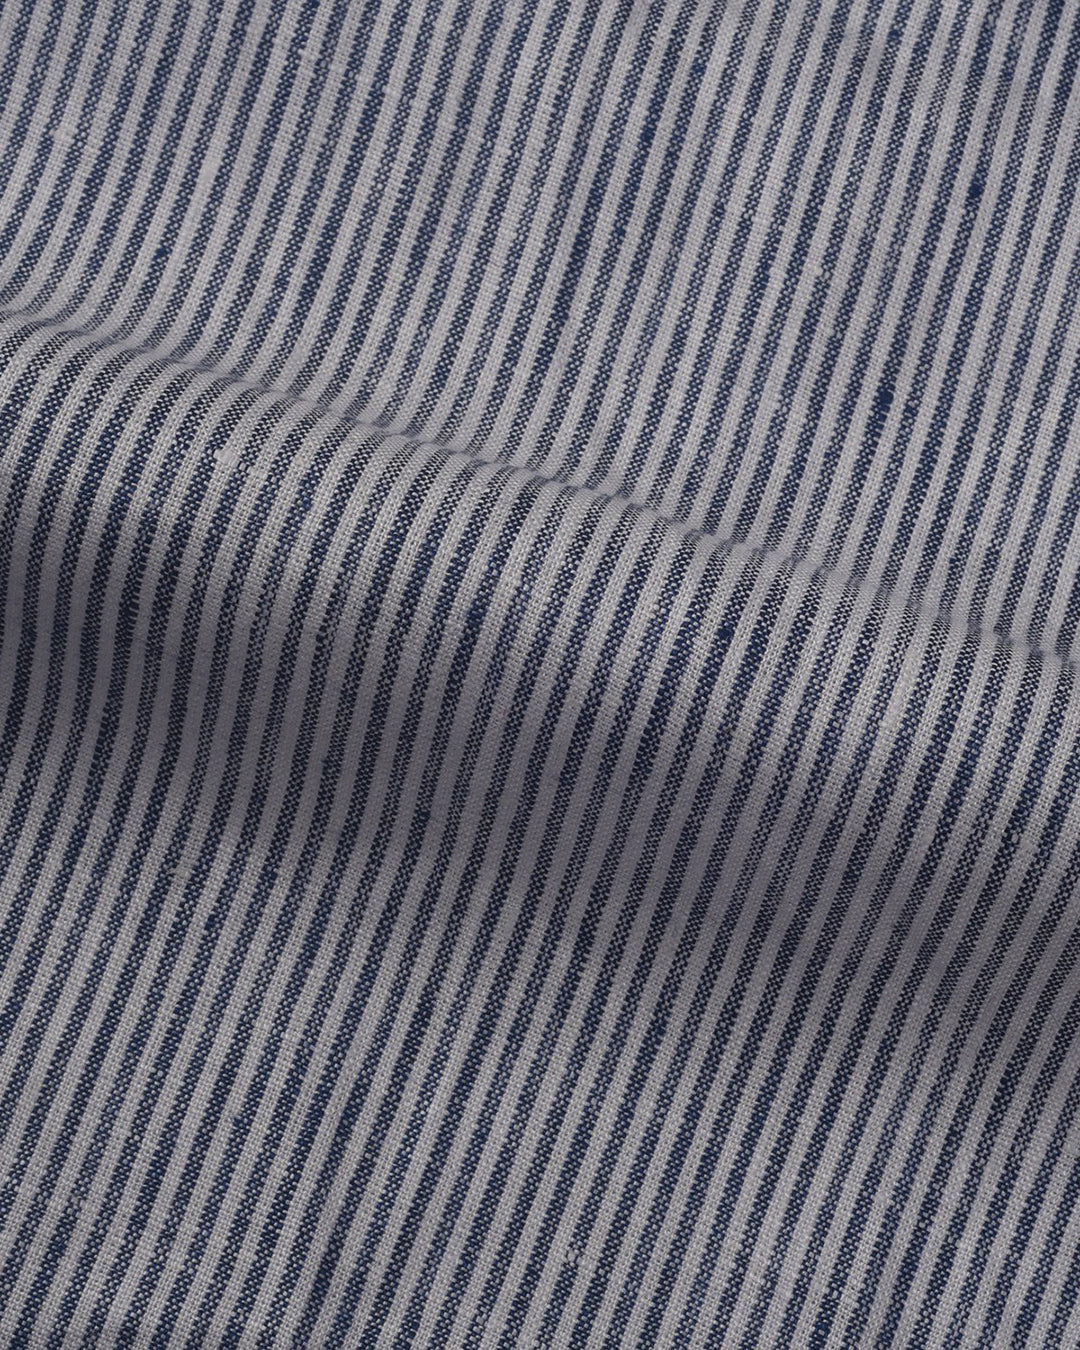 Pullover Shirt Blue White Stripes  Linen